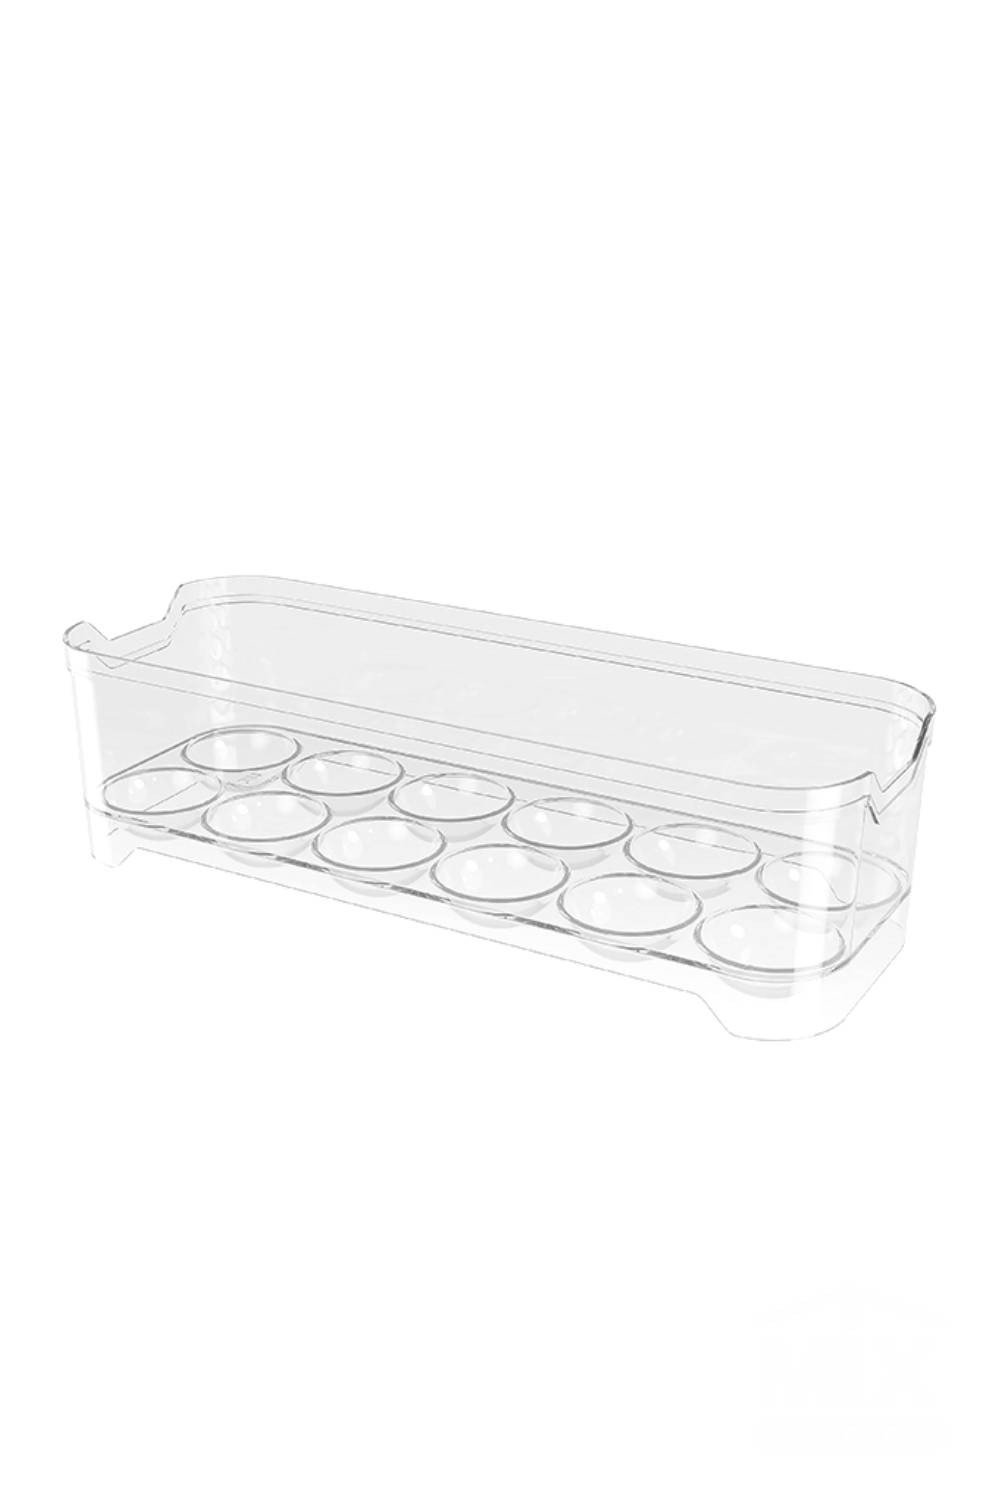 Porta Ovos Transparente Geladeira Empilhável Acrílico - Organizador de Ovo Acrilico - 12 ovos - PANA - 4